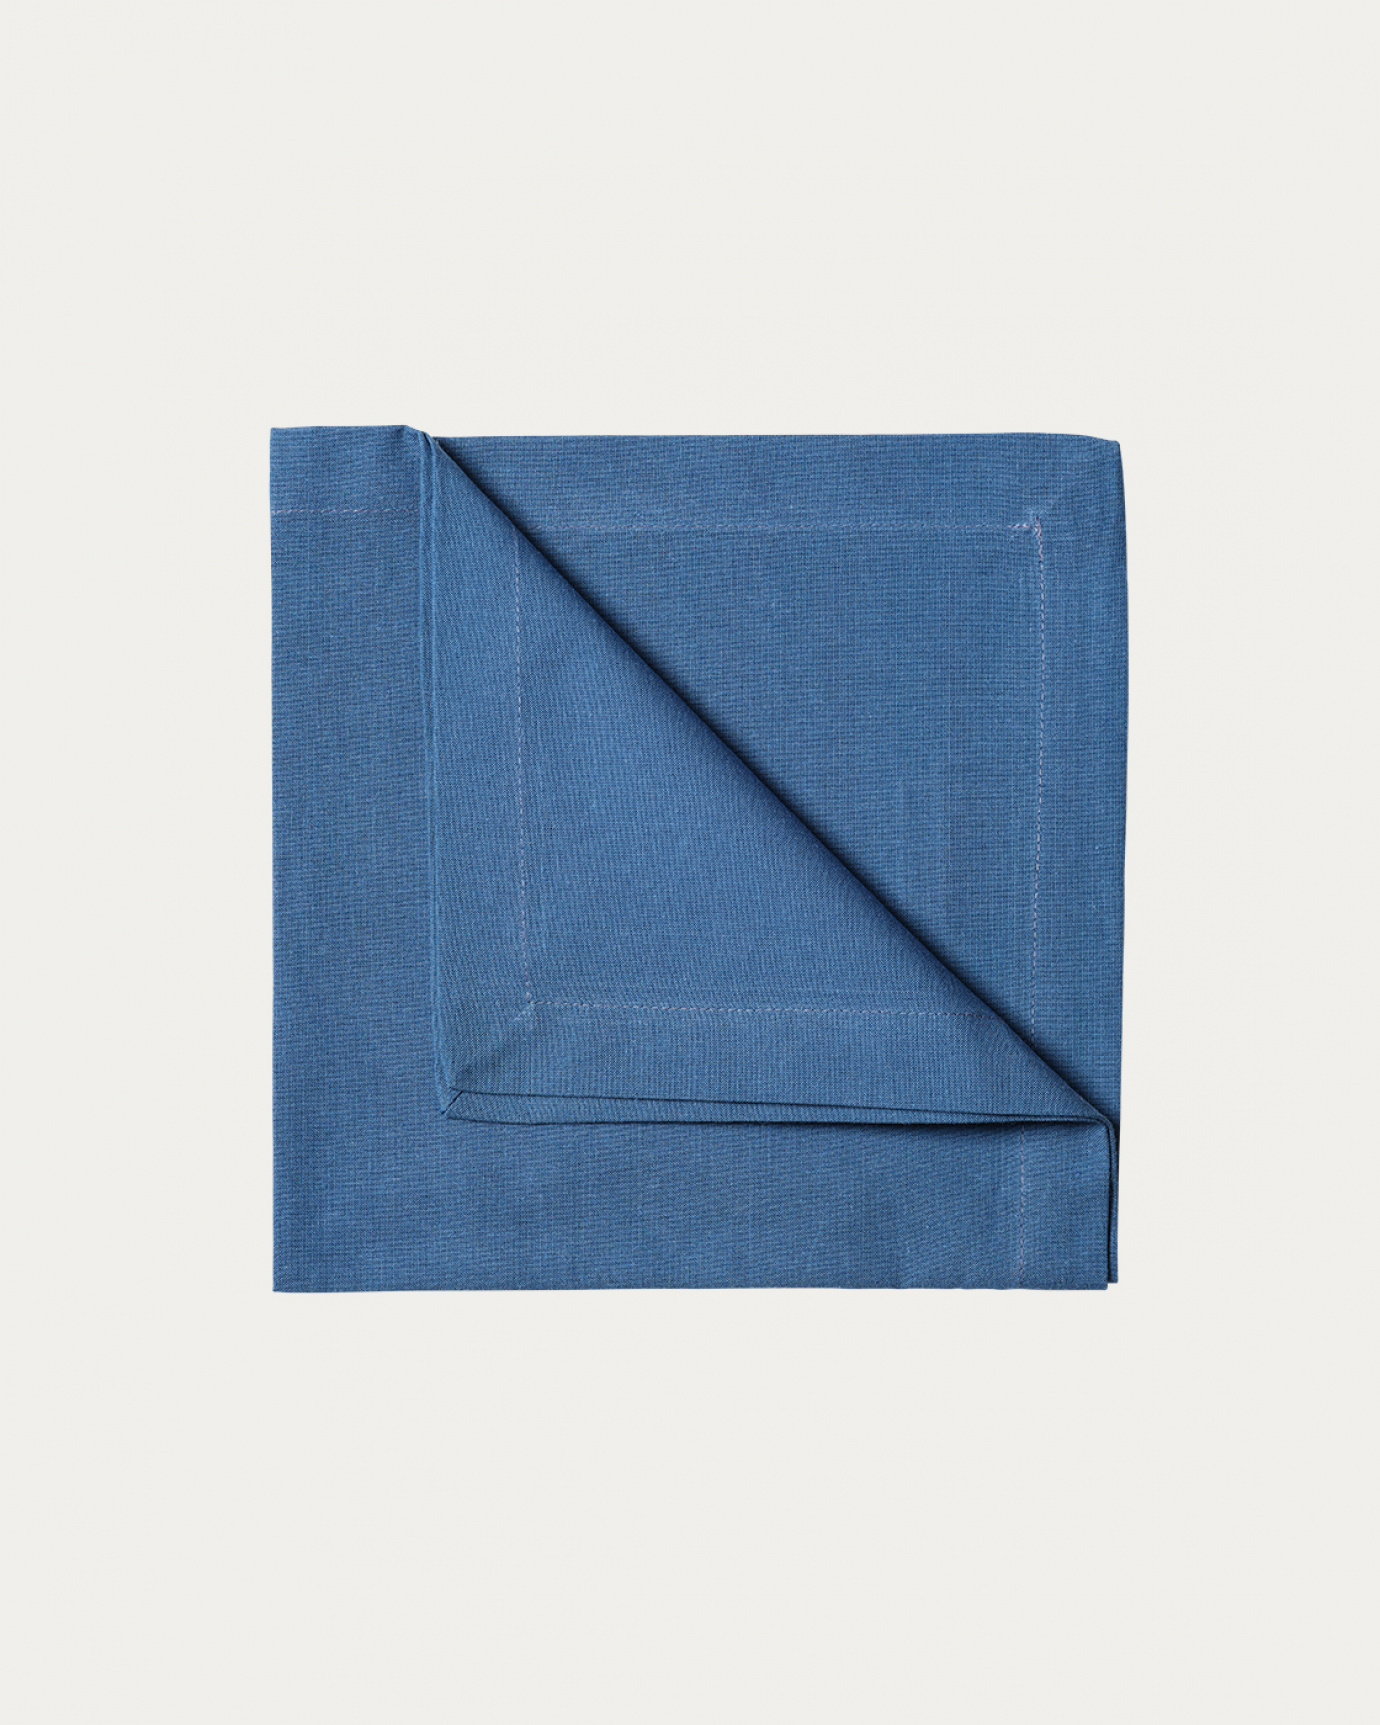 Image du produit serviette de table ROBERT bleu ocean en coton doux de LINUM DESIGN. Taille 45 x 45 cm et vendu en lot de 4.